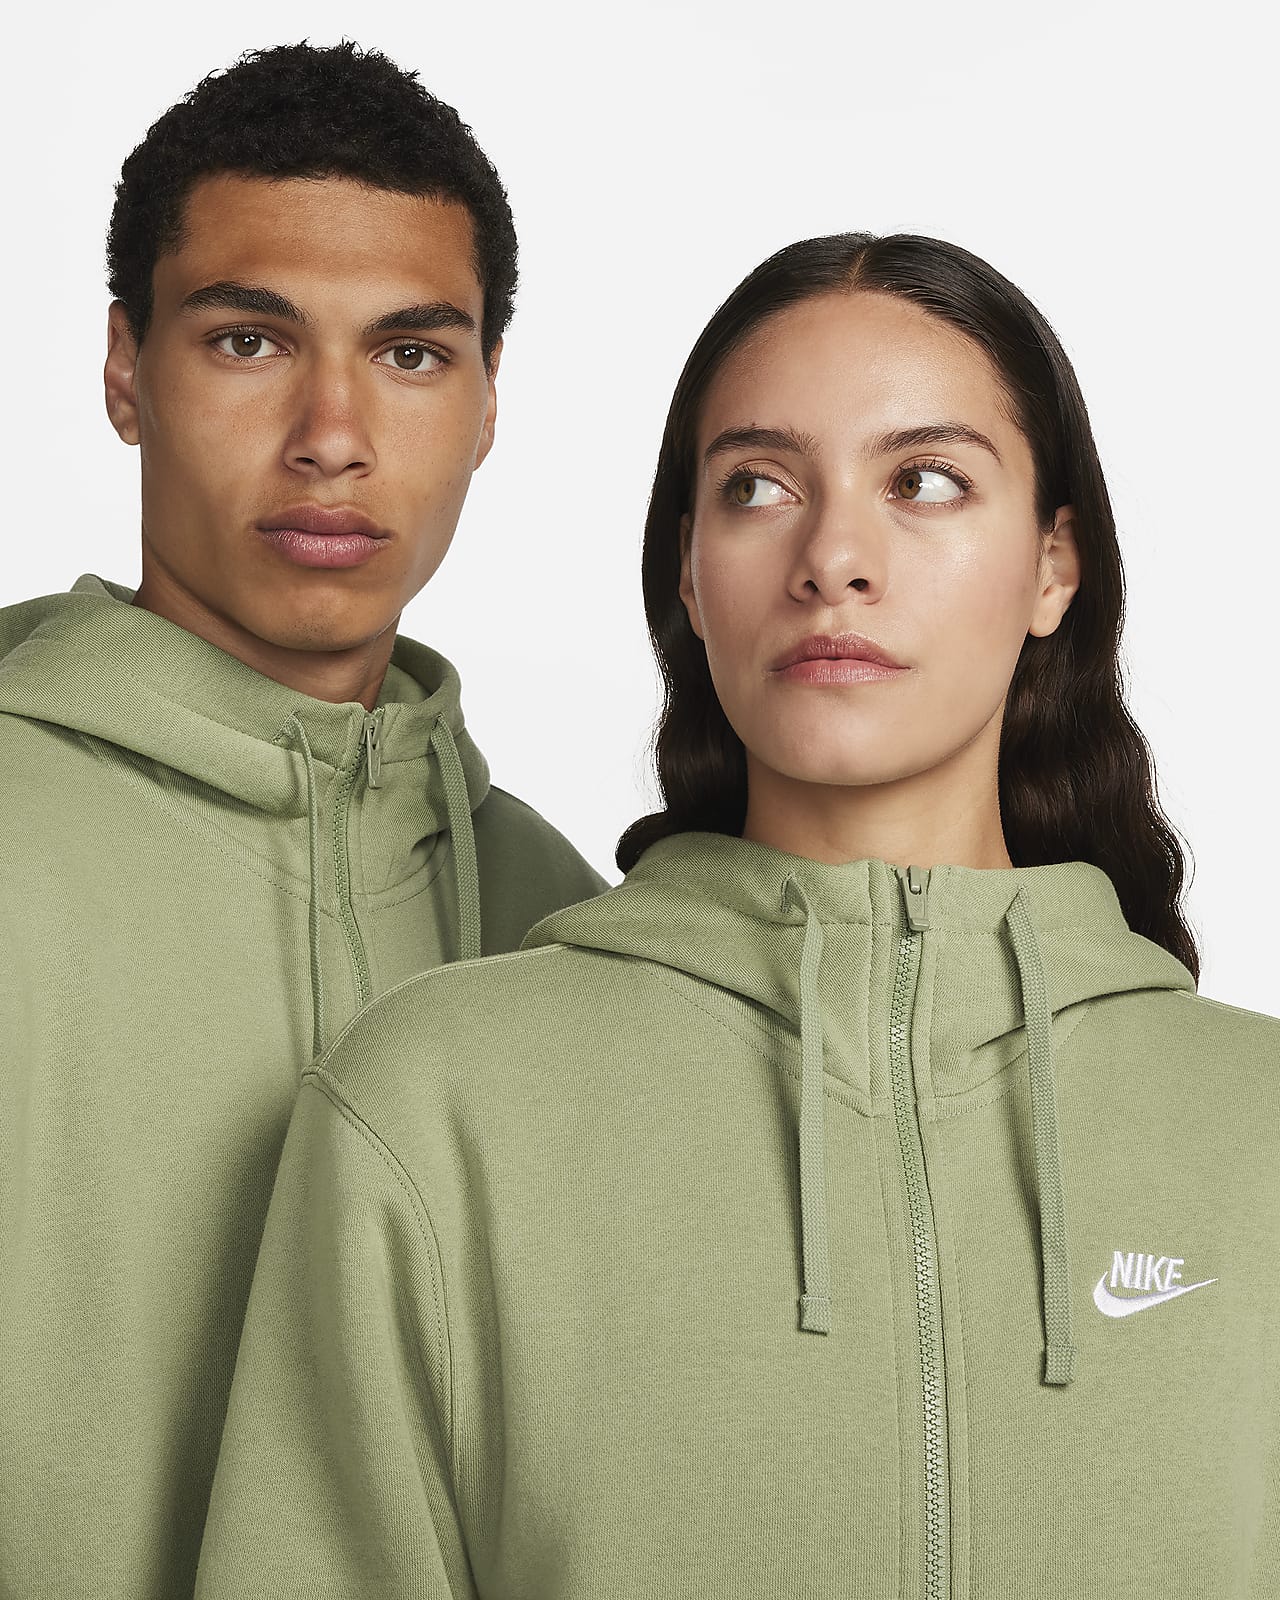 Men's Nike Sportswear Club Jersey Pullover Hoodie